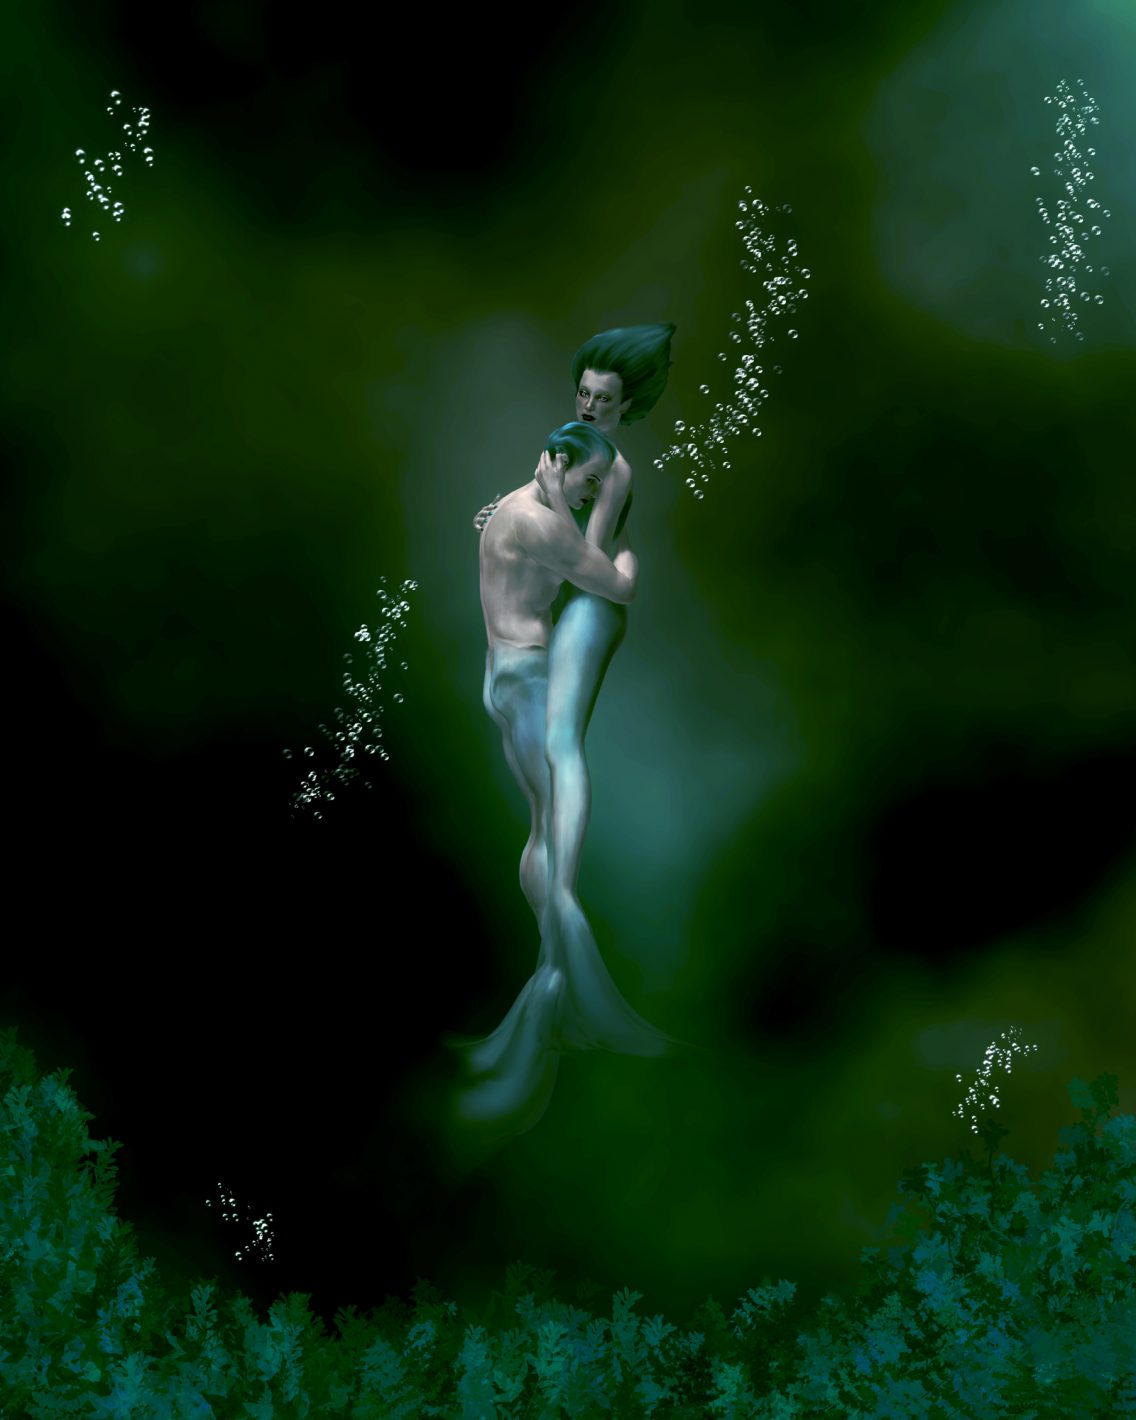 A mermaid and merman embracing underwater